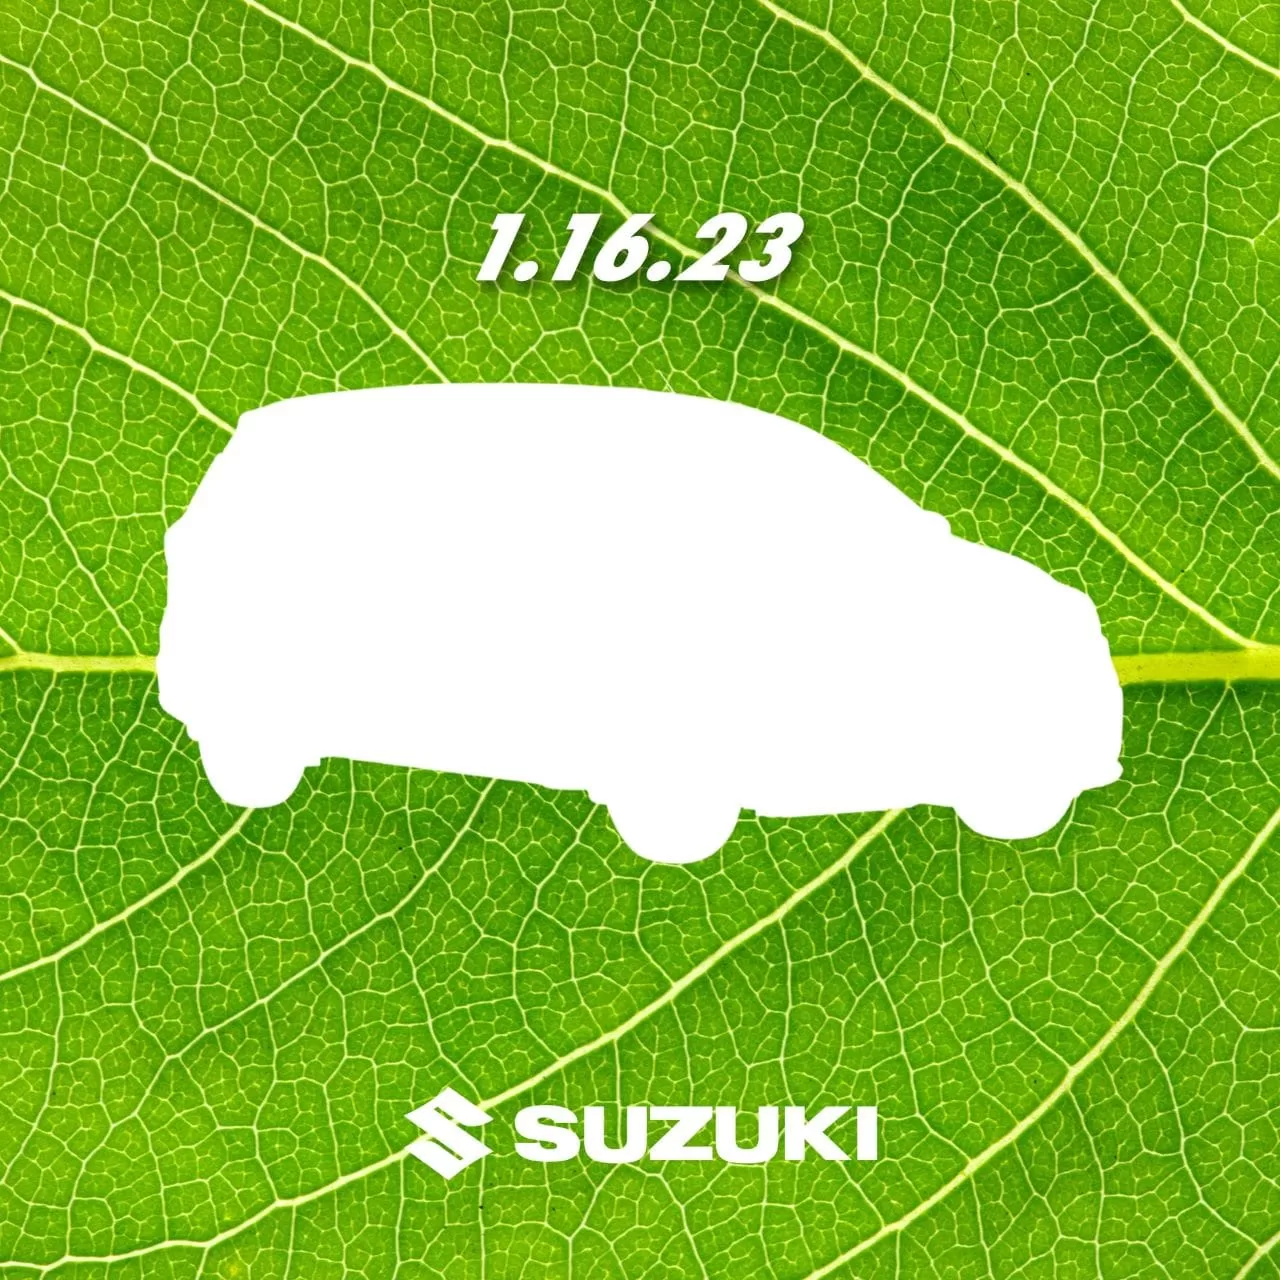 Suzuki Ertiga Hybrid Teaser Inline 01 Min